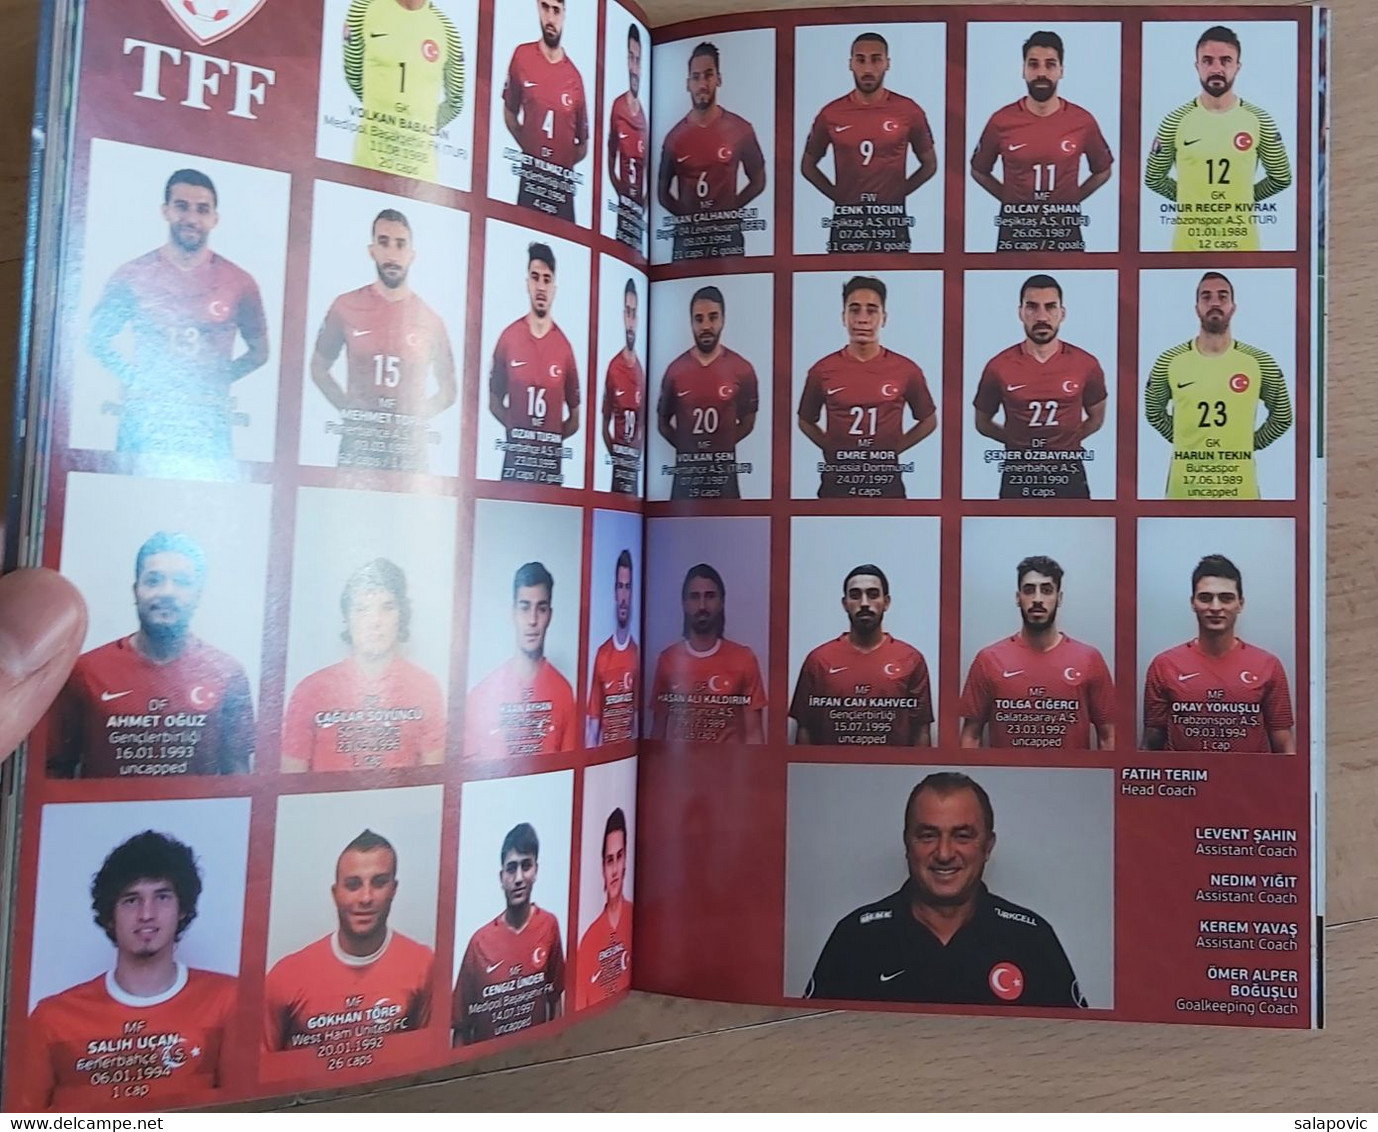 CROATIA V TURKEY - 2018 FIFA WORLD CUP Qualif. Football Match Program FOOTBALL CROATIA FOOTBALL MATCH PROGRAM - Libros